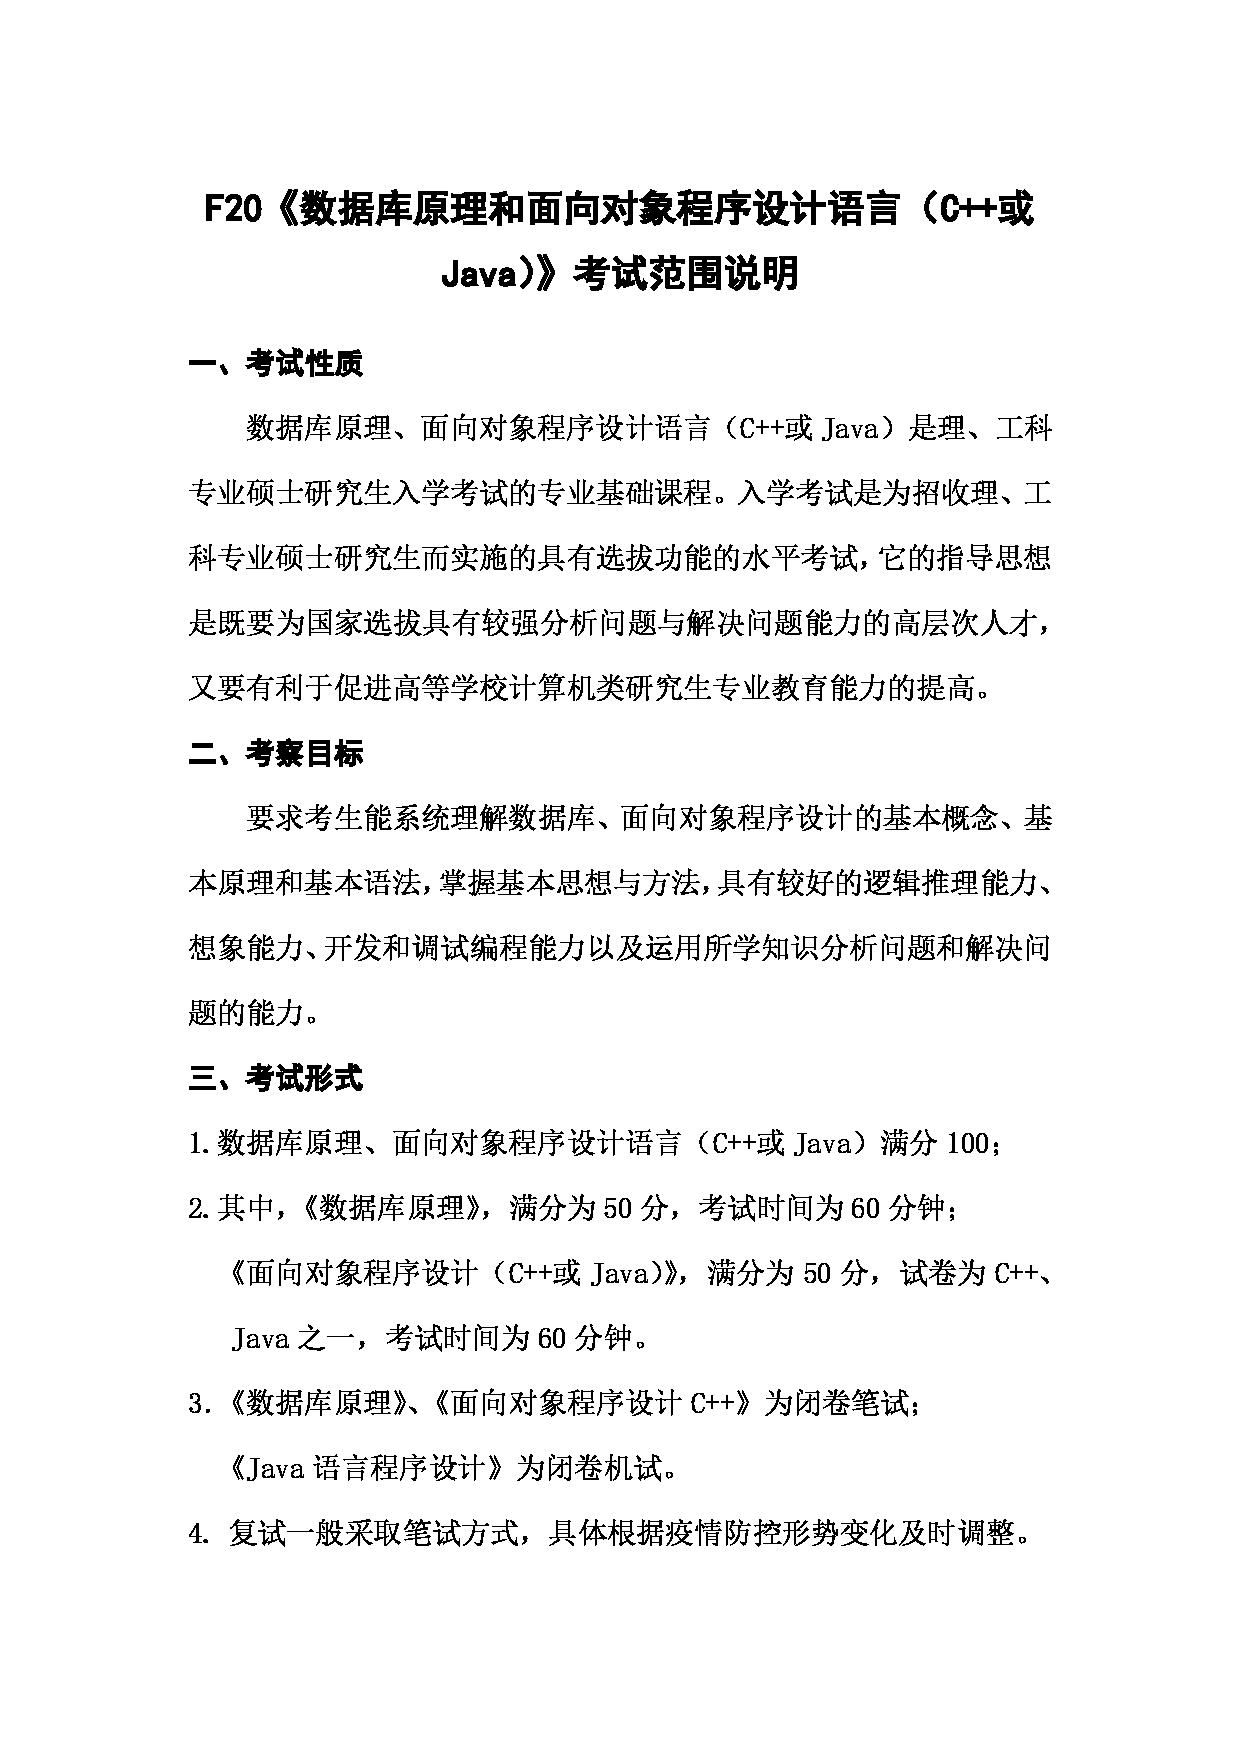 上海海洋大学2023年考研自命题科目  F20《数据库原理和面向对象程序设计语言（C++或Java）》 考试范围第1页